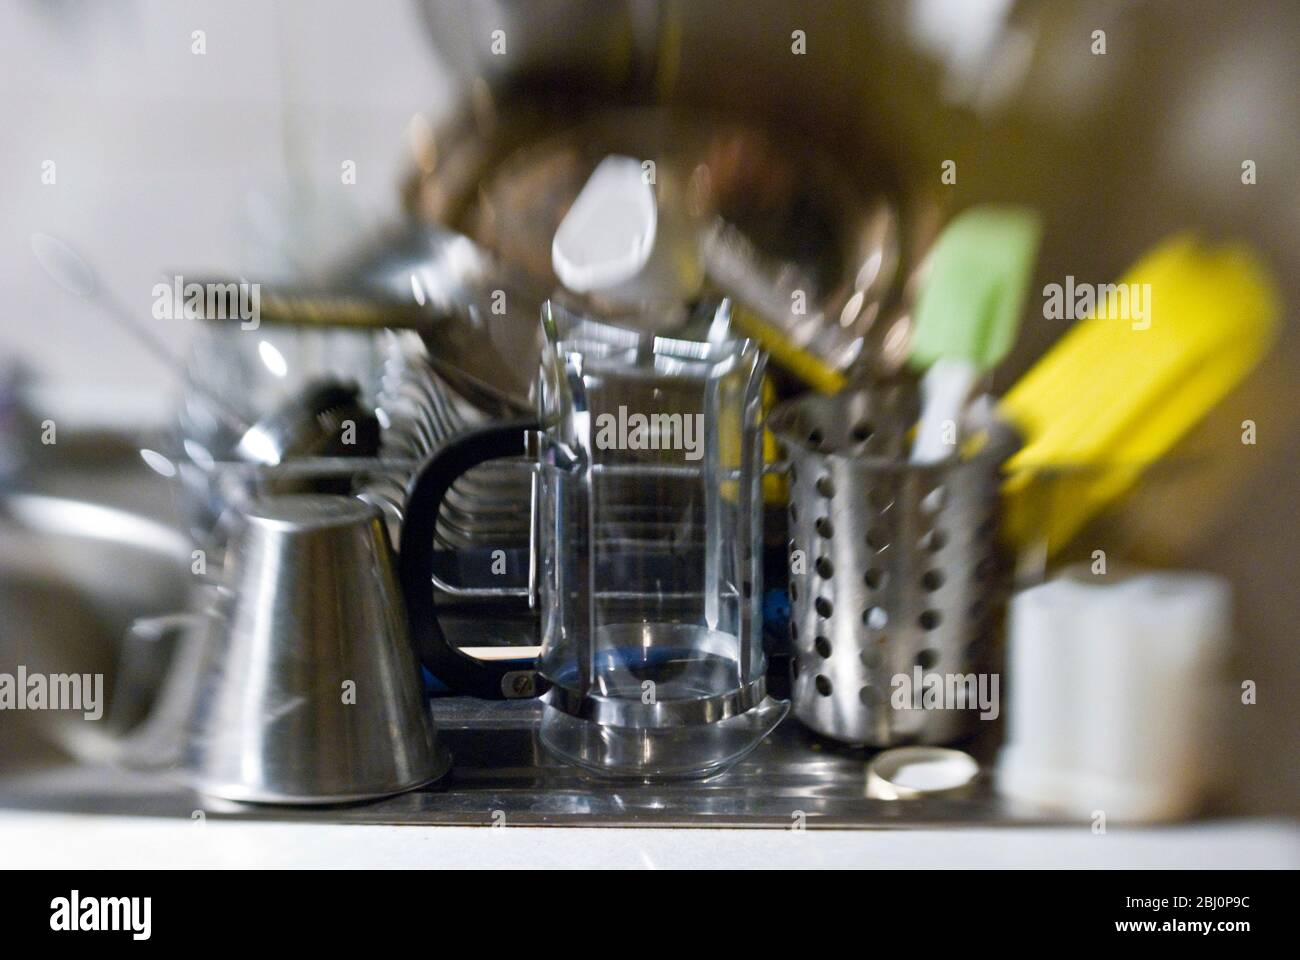 Abwasch in Spülbecken gestapelt auf dem Abtropfbrett der Spülbecken. Aufnahme mit Lenssbaby-Objektiv für unscharfe Effekte - Stockfoto